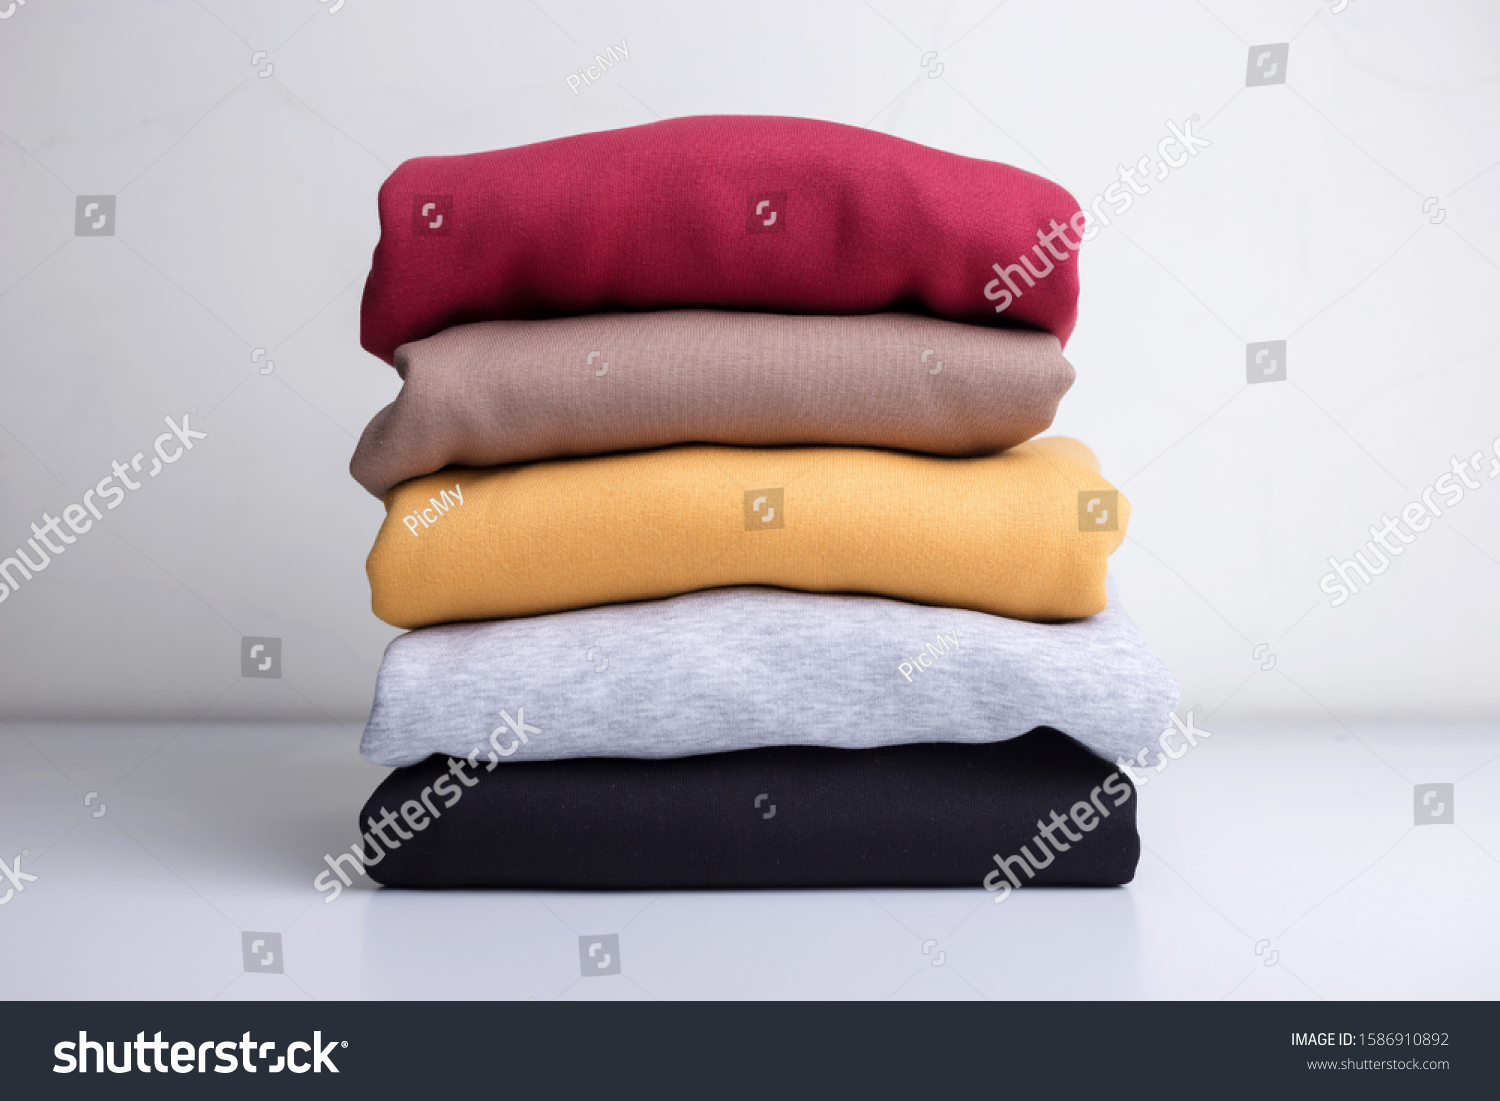 2,547 Stack sweatshirts Images, Stock Photos & Vectors | Shutterstock